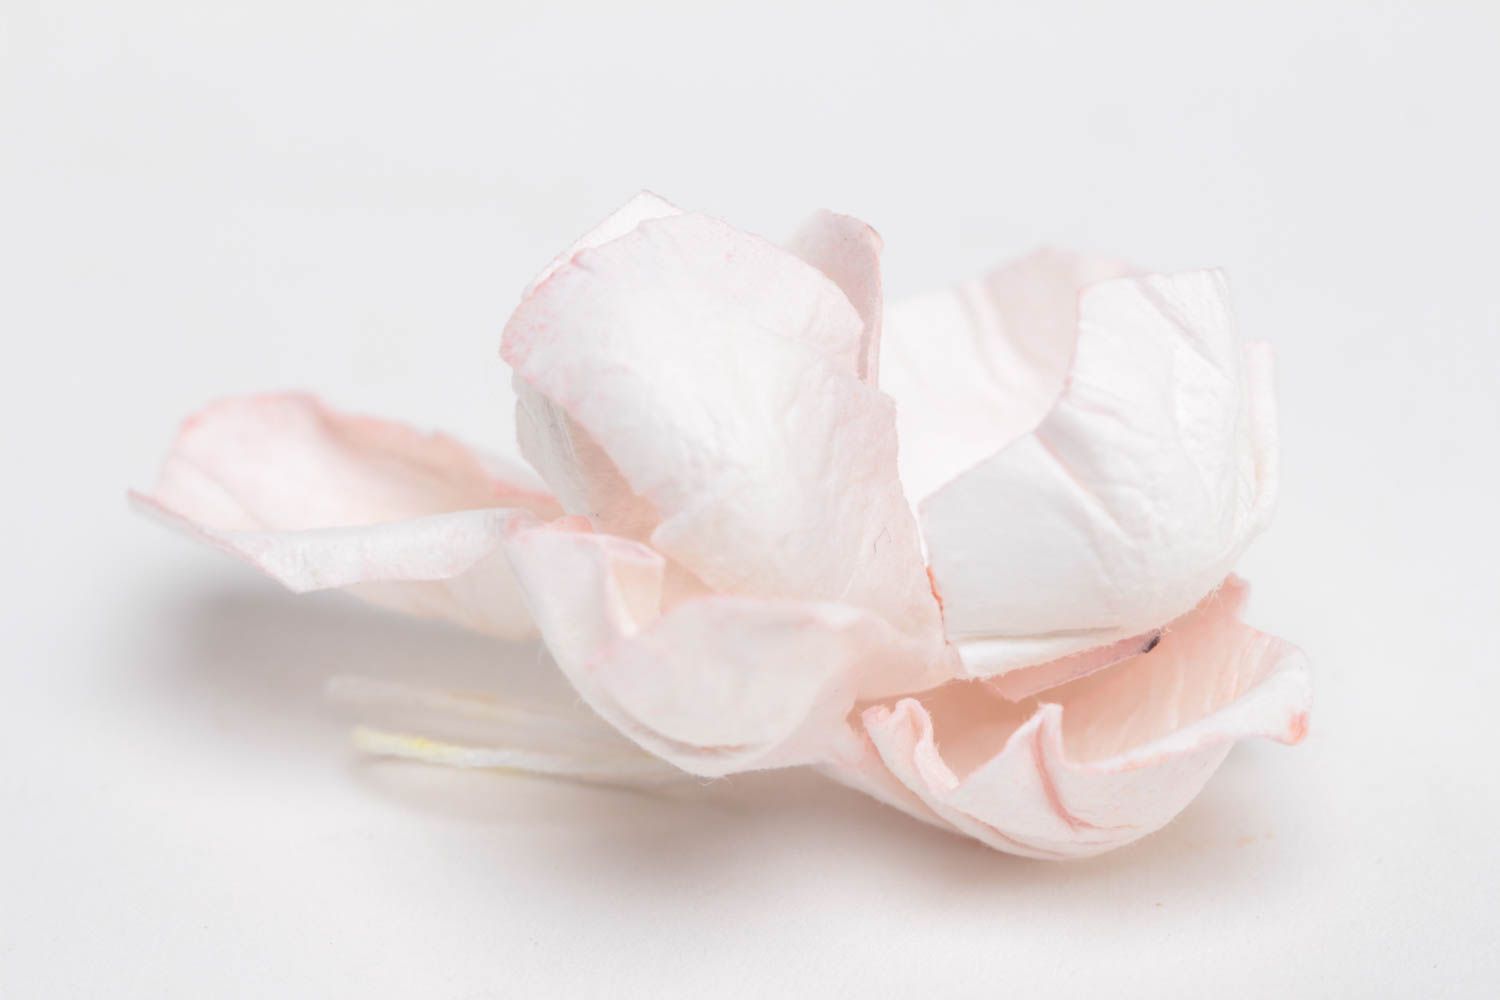 Цветок скрапбукинг небольшой розовый нежный красивый для творчества хэнд мейд фото 3